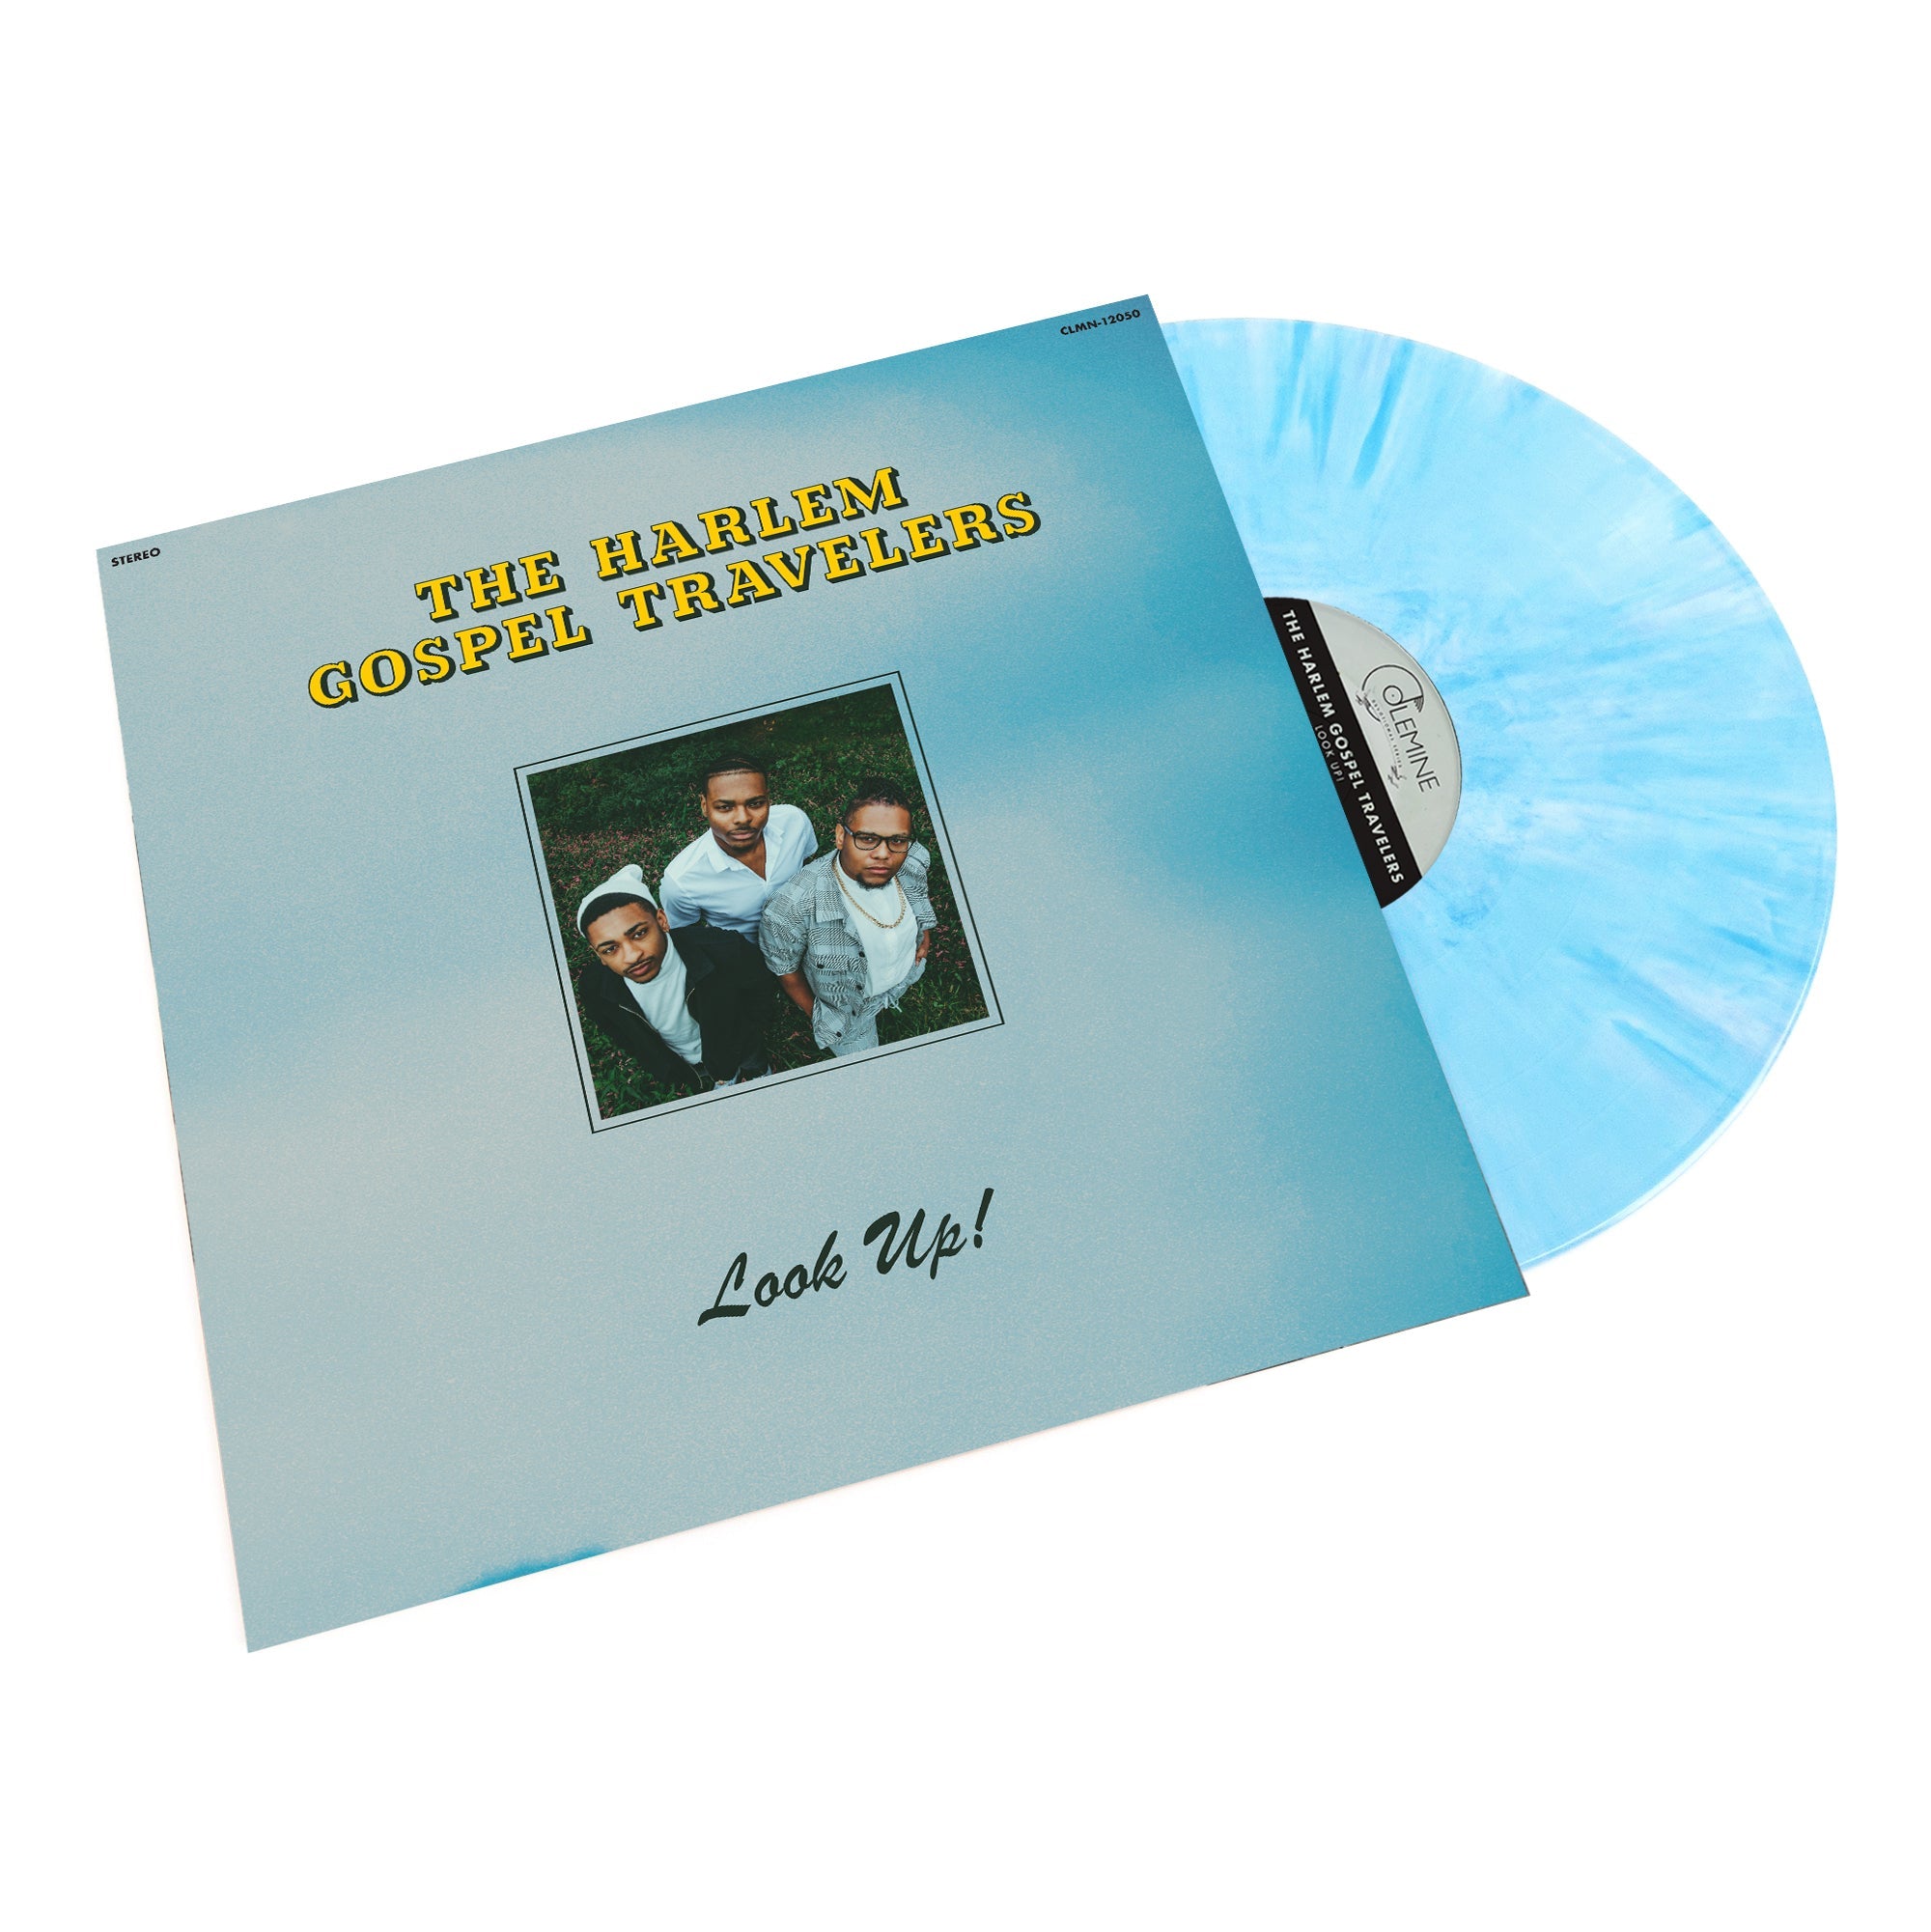 [DAMAGED] The Harlem Gospel Travelers - Look Up! [Indie-Exclusive Blue Vinyl]